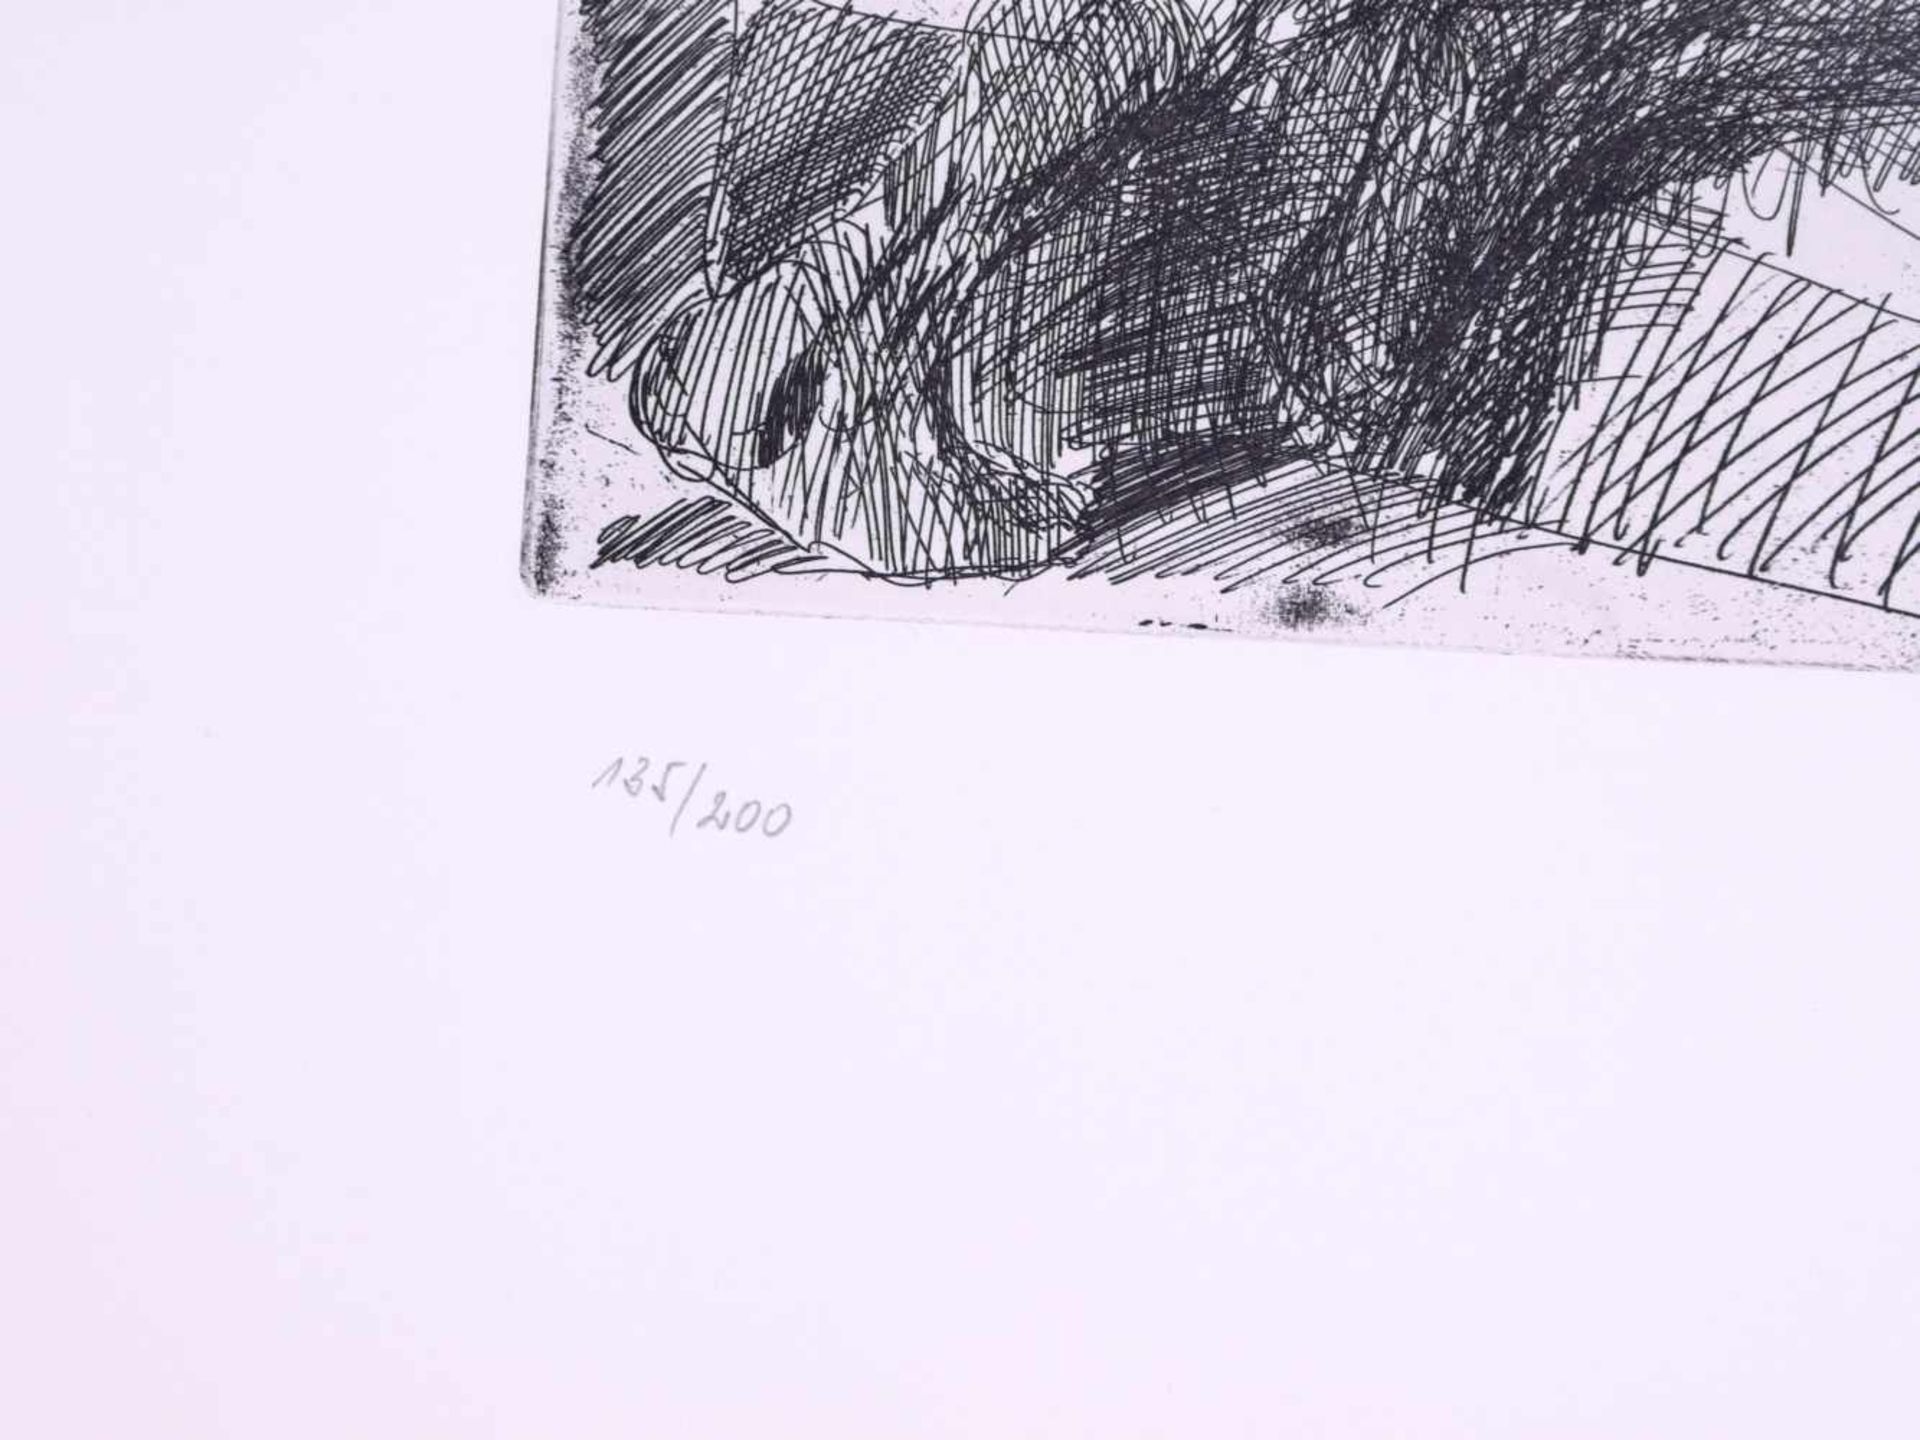 Hrdlicka, Alfred (1928-2009) - Erotische Radierung 135/200Darstellung eines Liebespaares beim Akt. - Image 3 of 4